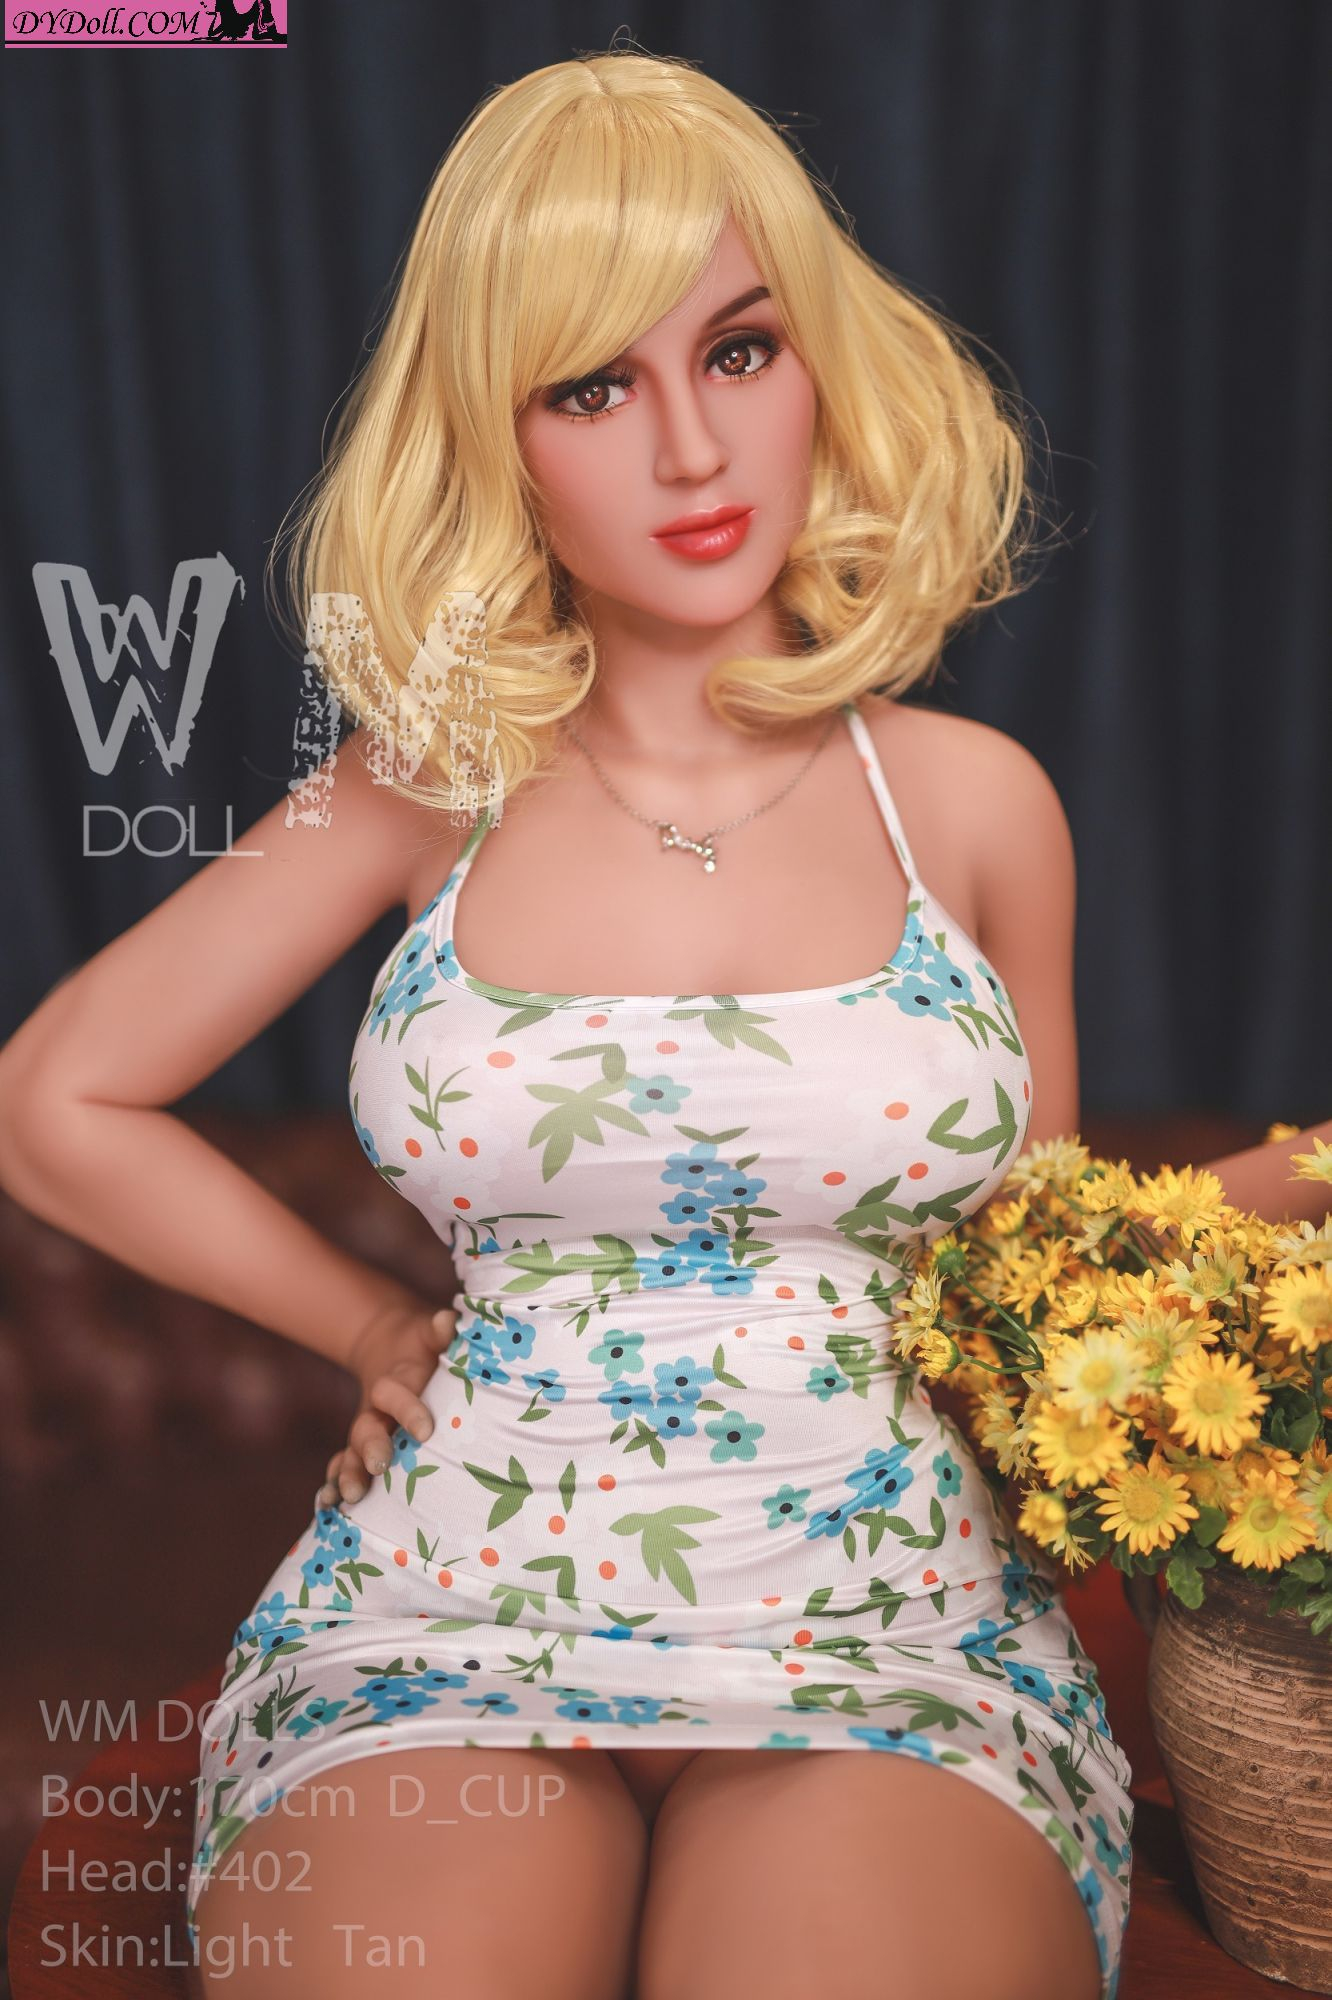 Blonde teen sex doll with curvy body - N